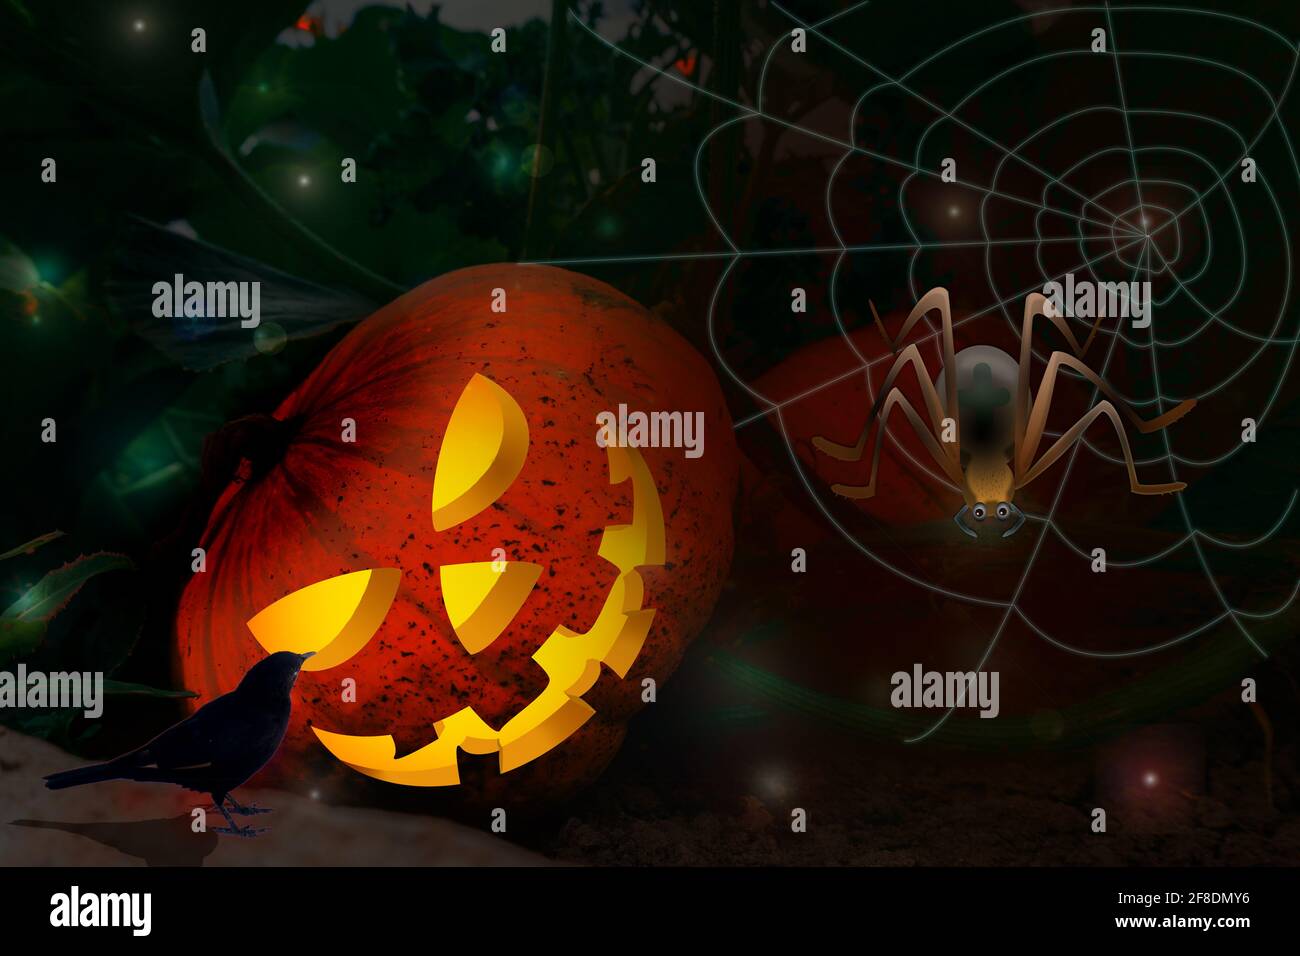 Noche de Halloween oscura con calabaza brillante, tela de araña, cuervo negro y luces de bruja. Ilustración con fondo borroso. Foto de stock